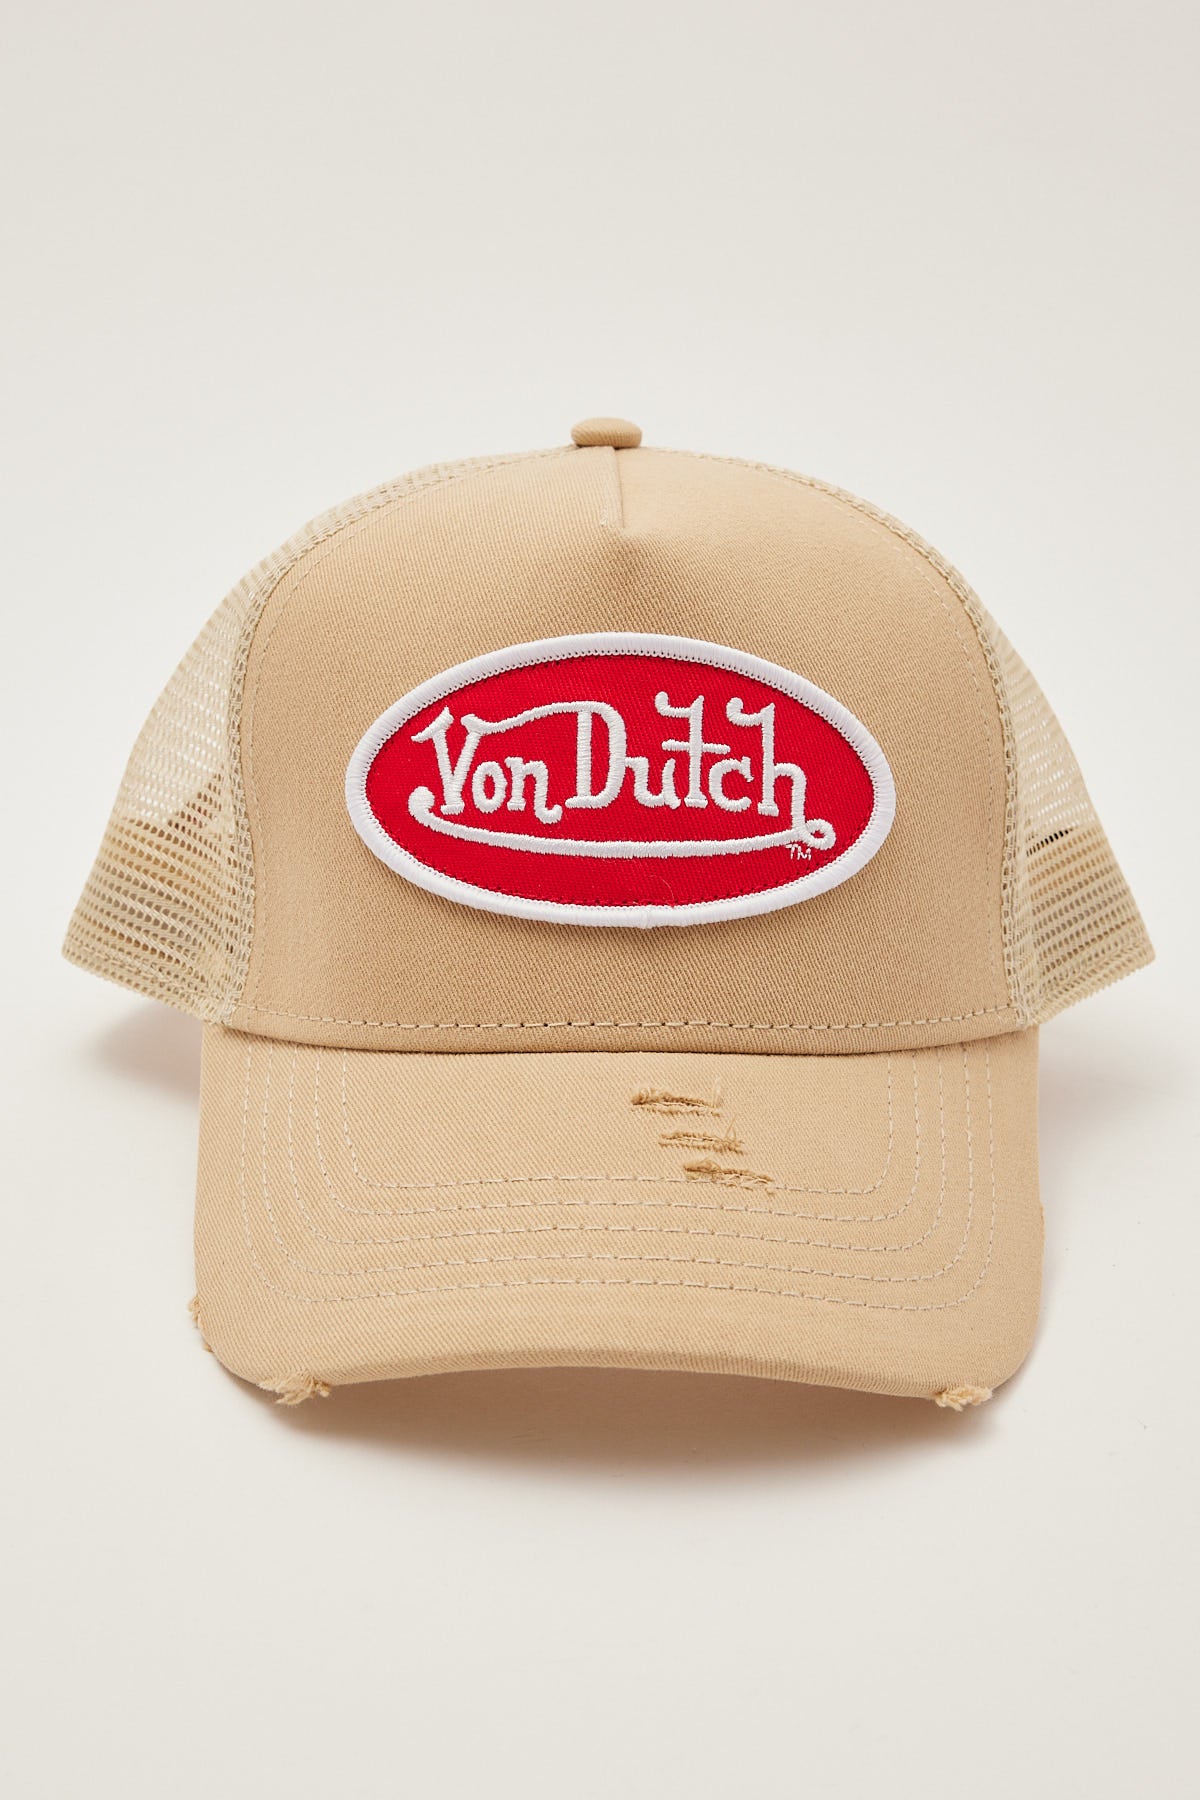 Von Dutch Trucker Hat Taupe Distressed/Red Patch